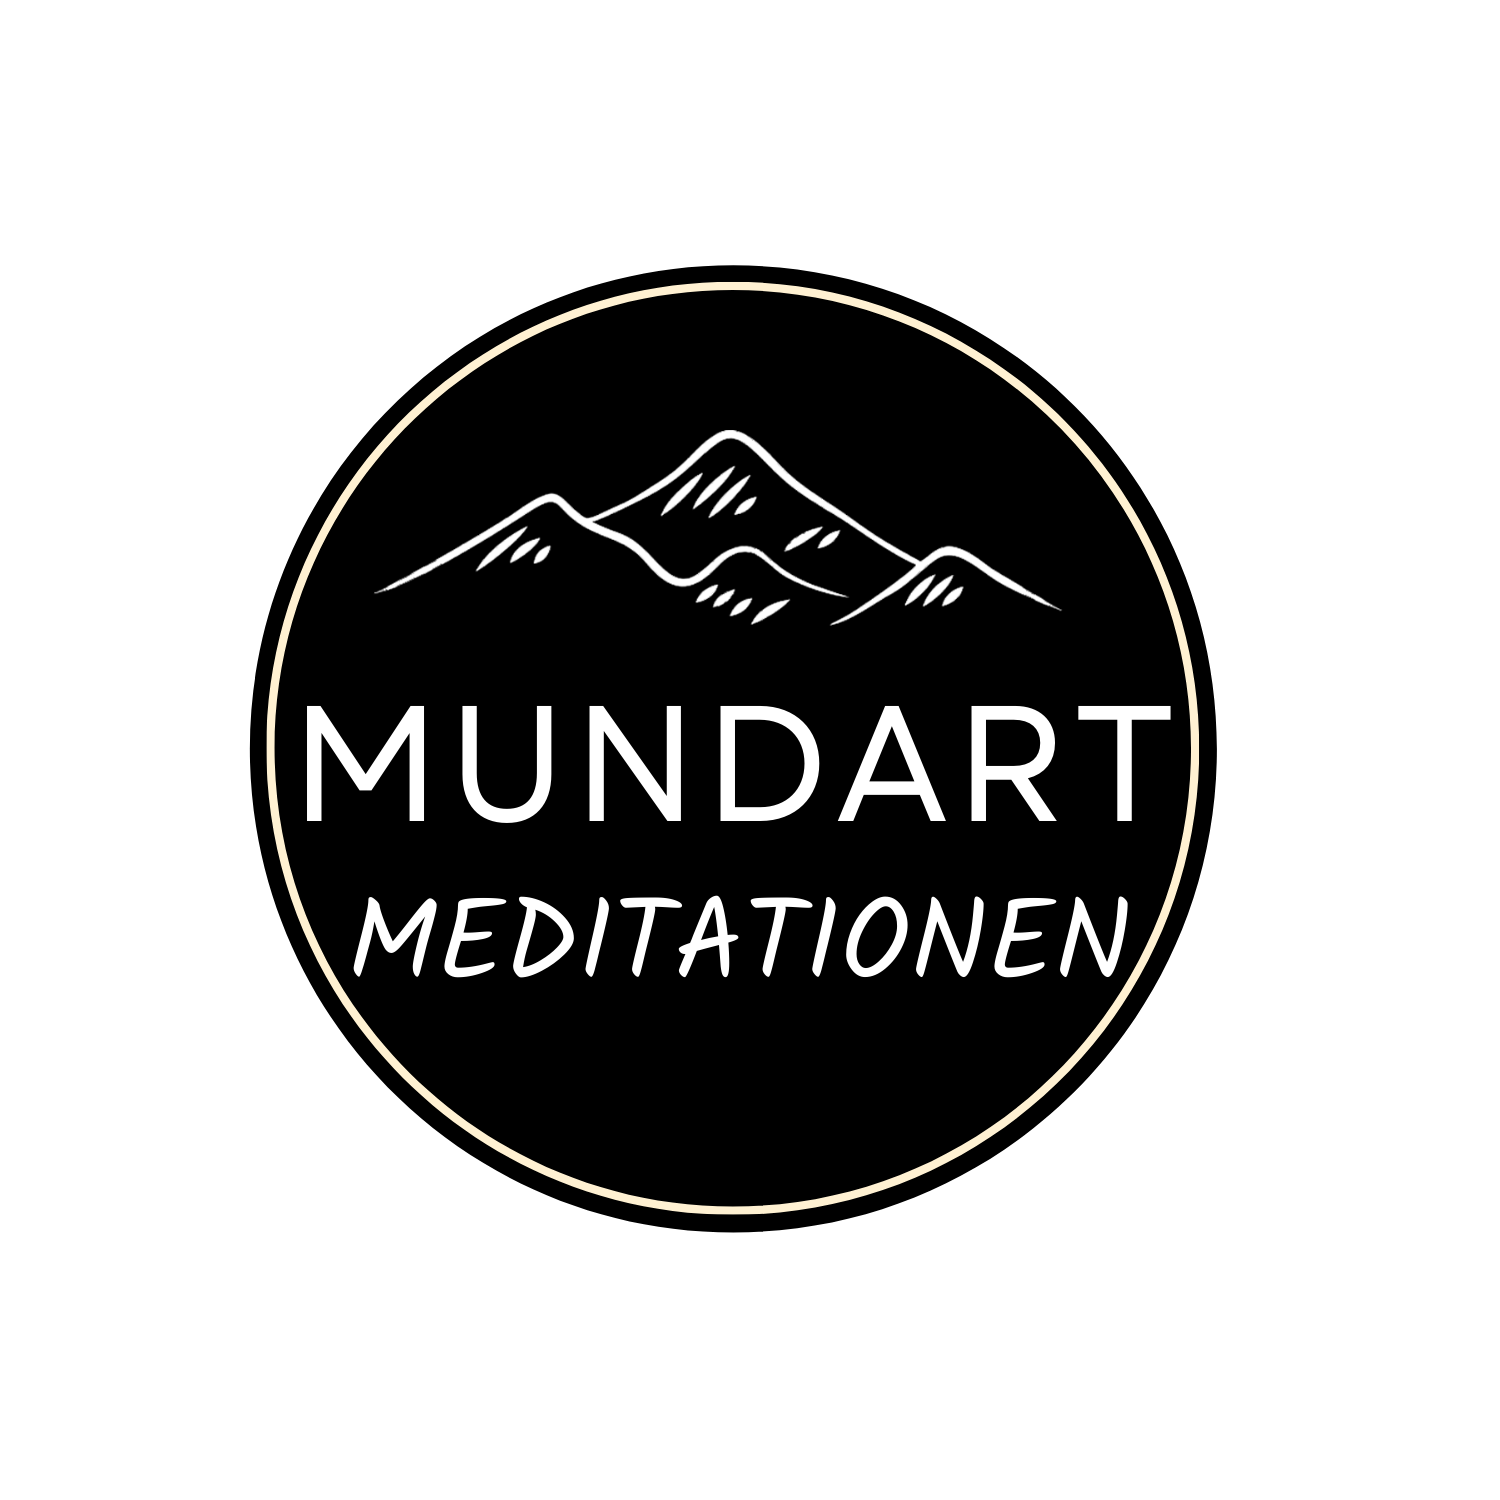 MundART Meditationen